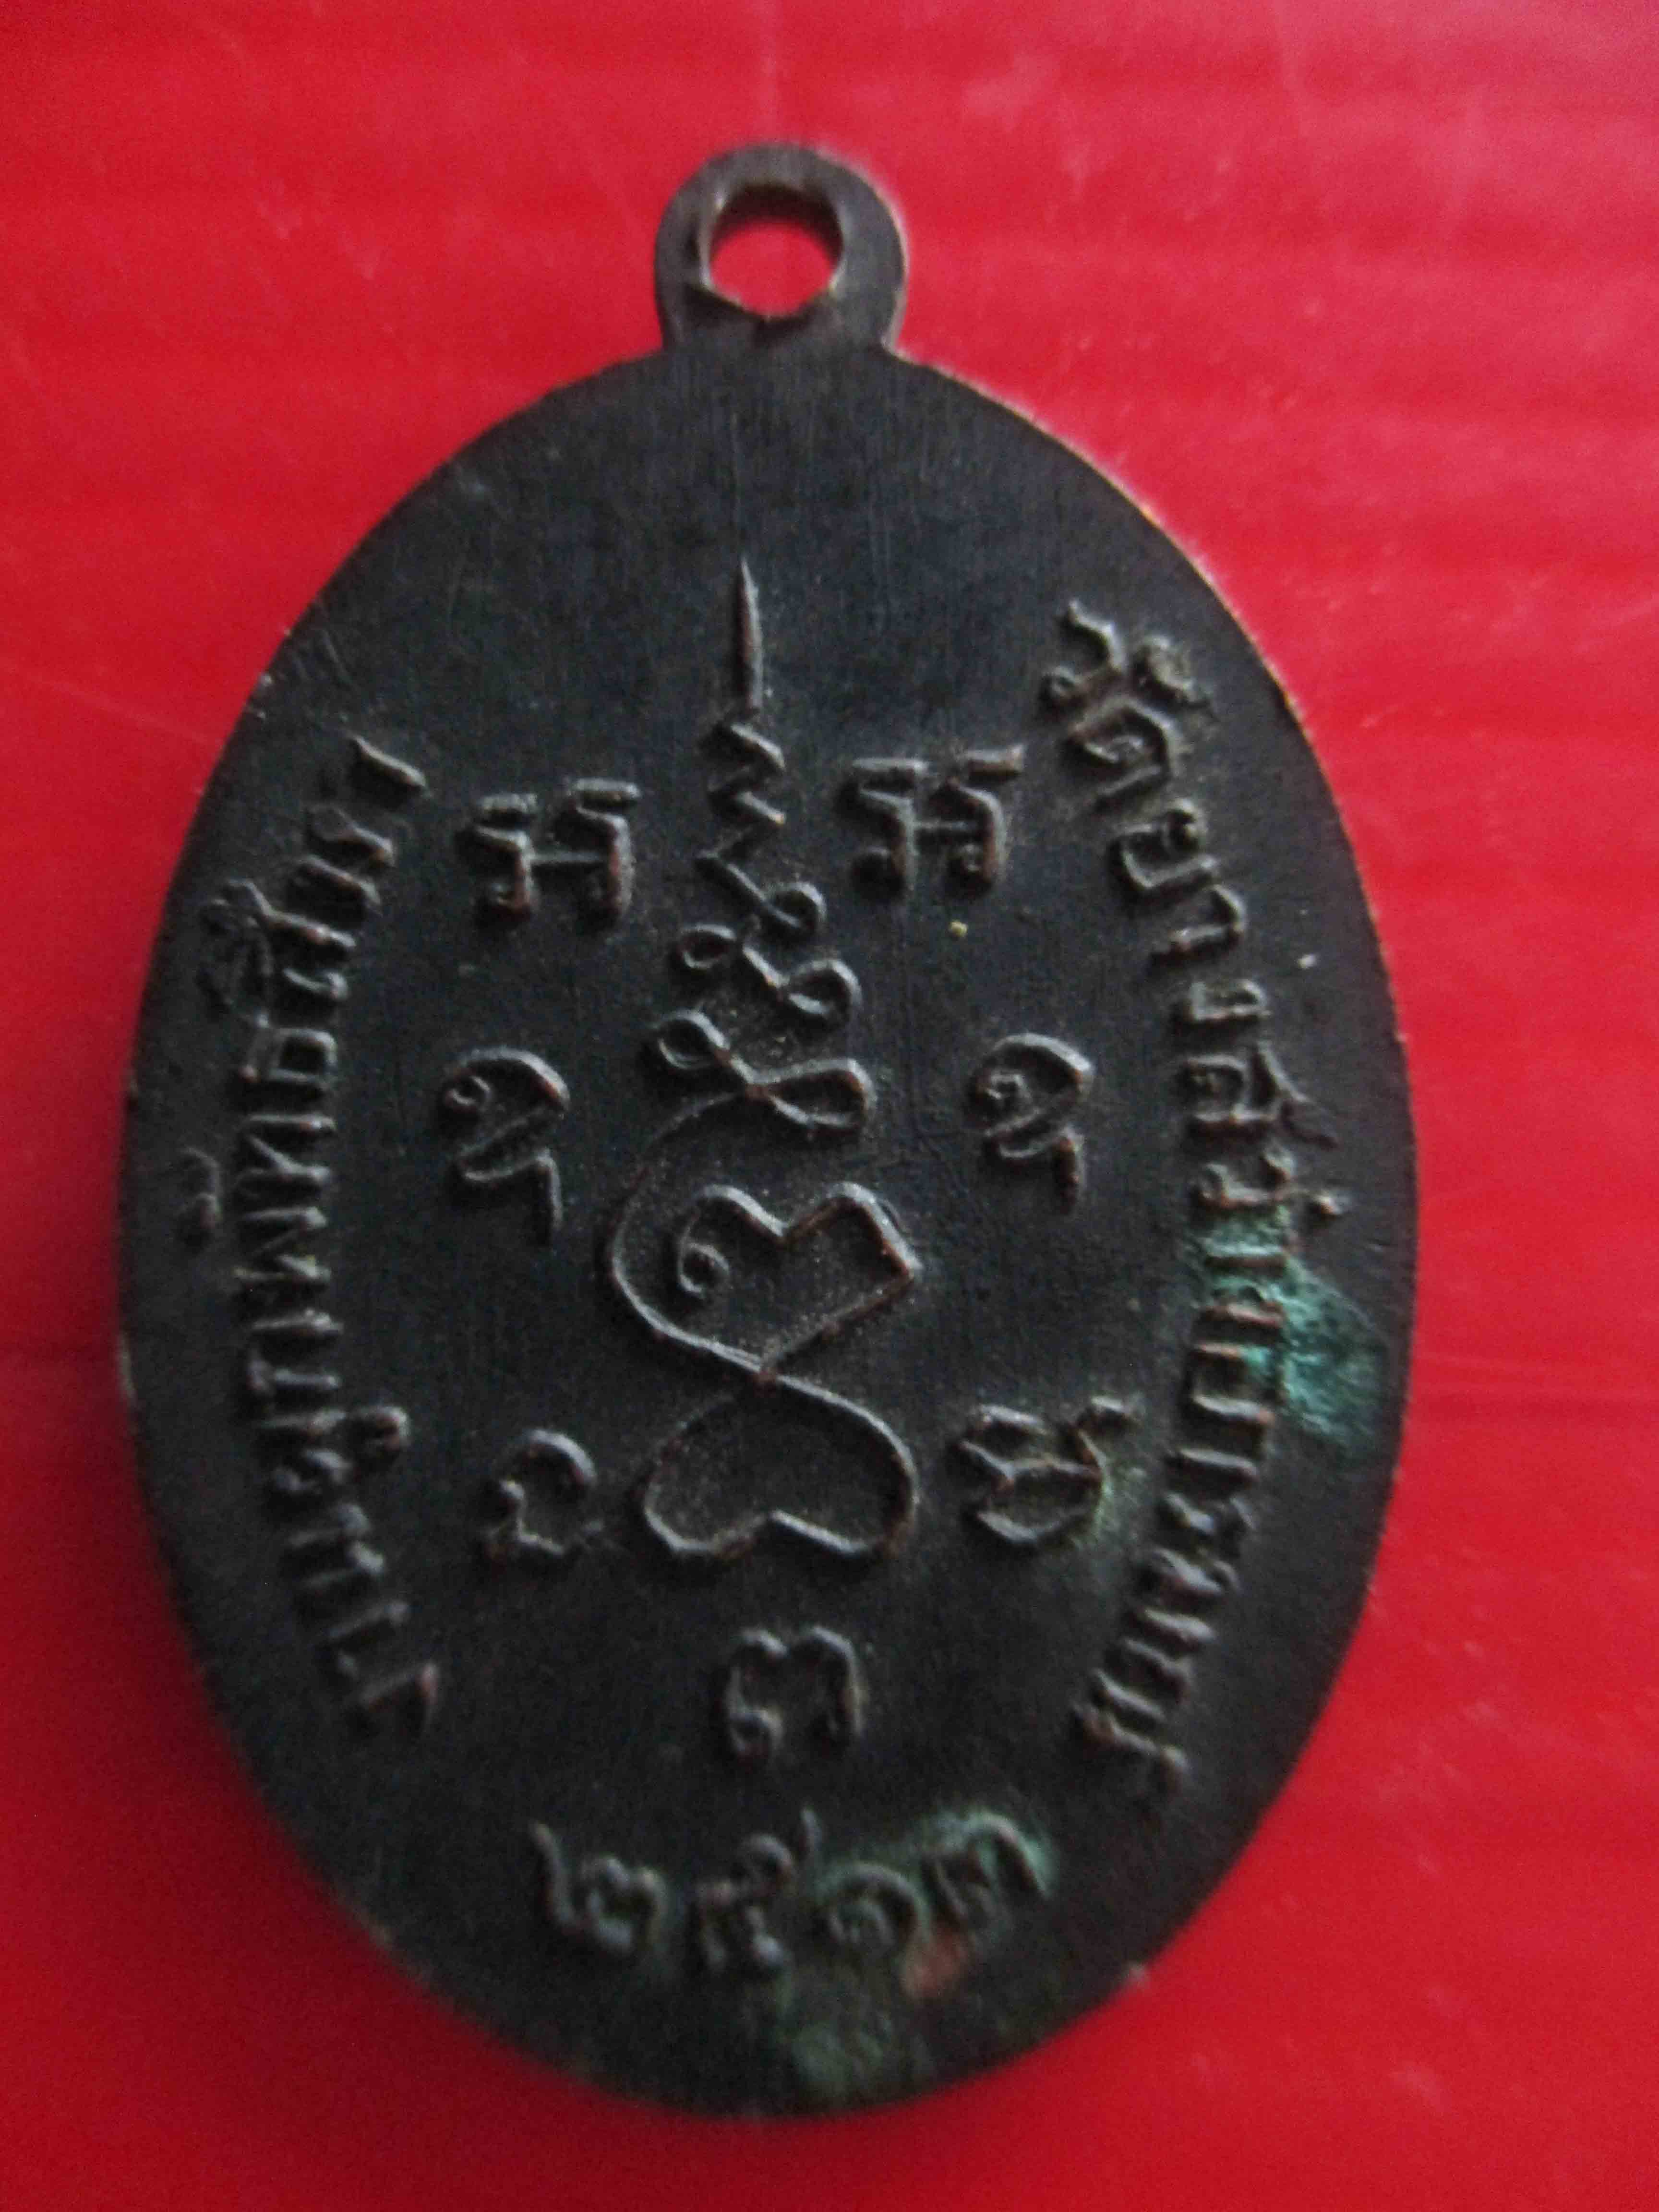  เหรียญหลวงพ่อสงัด วัดดอนหอคอย งานผูกพัทธสีมา วัดยางสว่างอารมณ์ ปี 2513